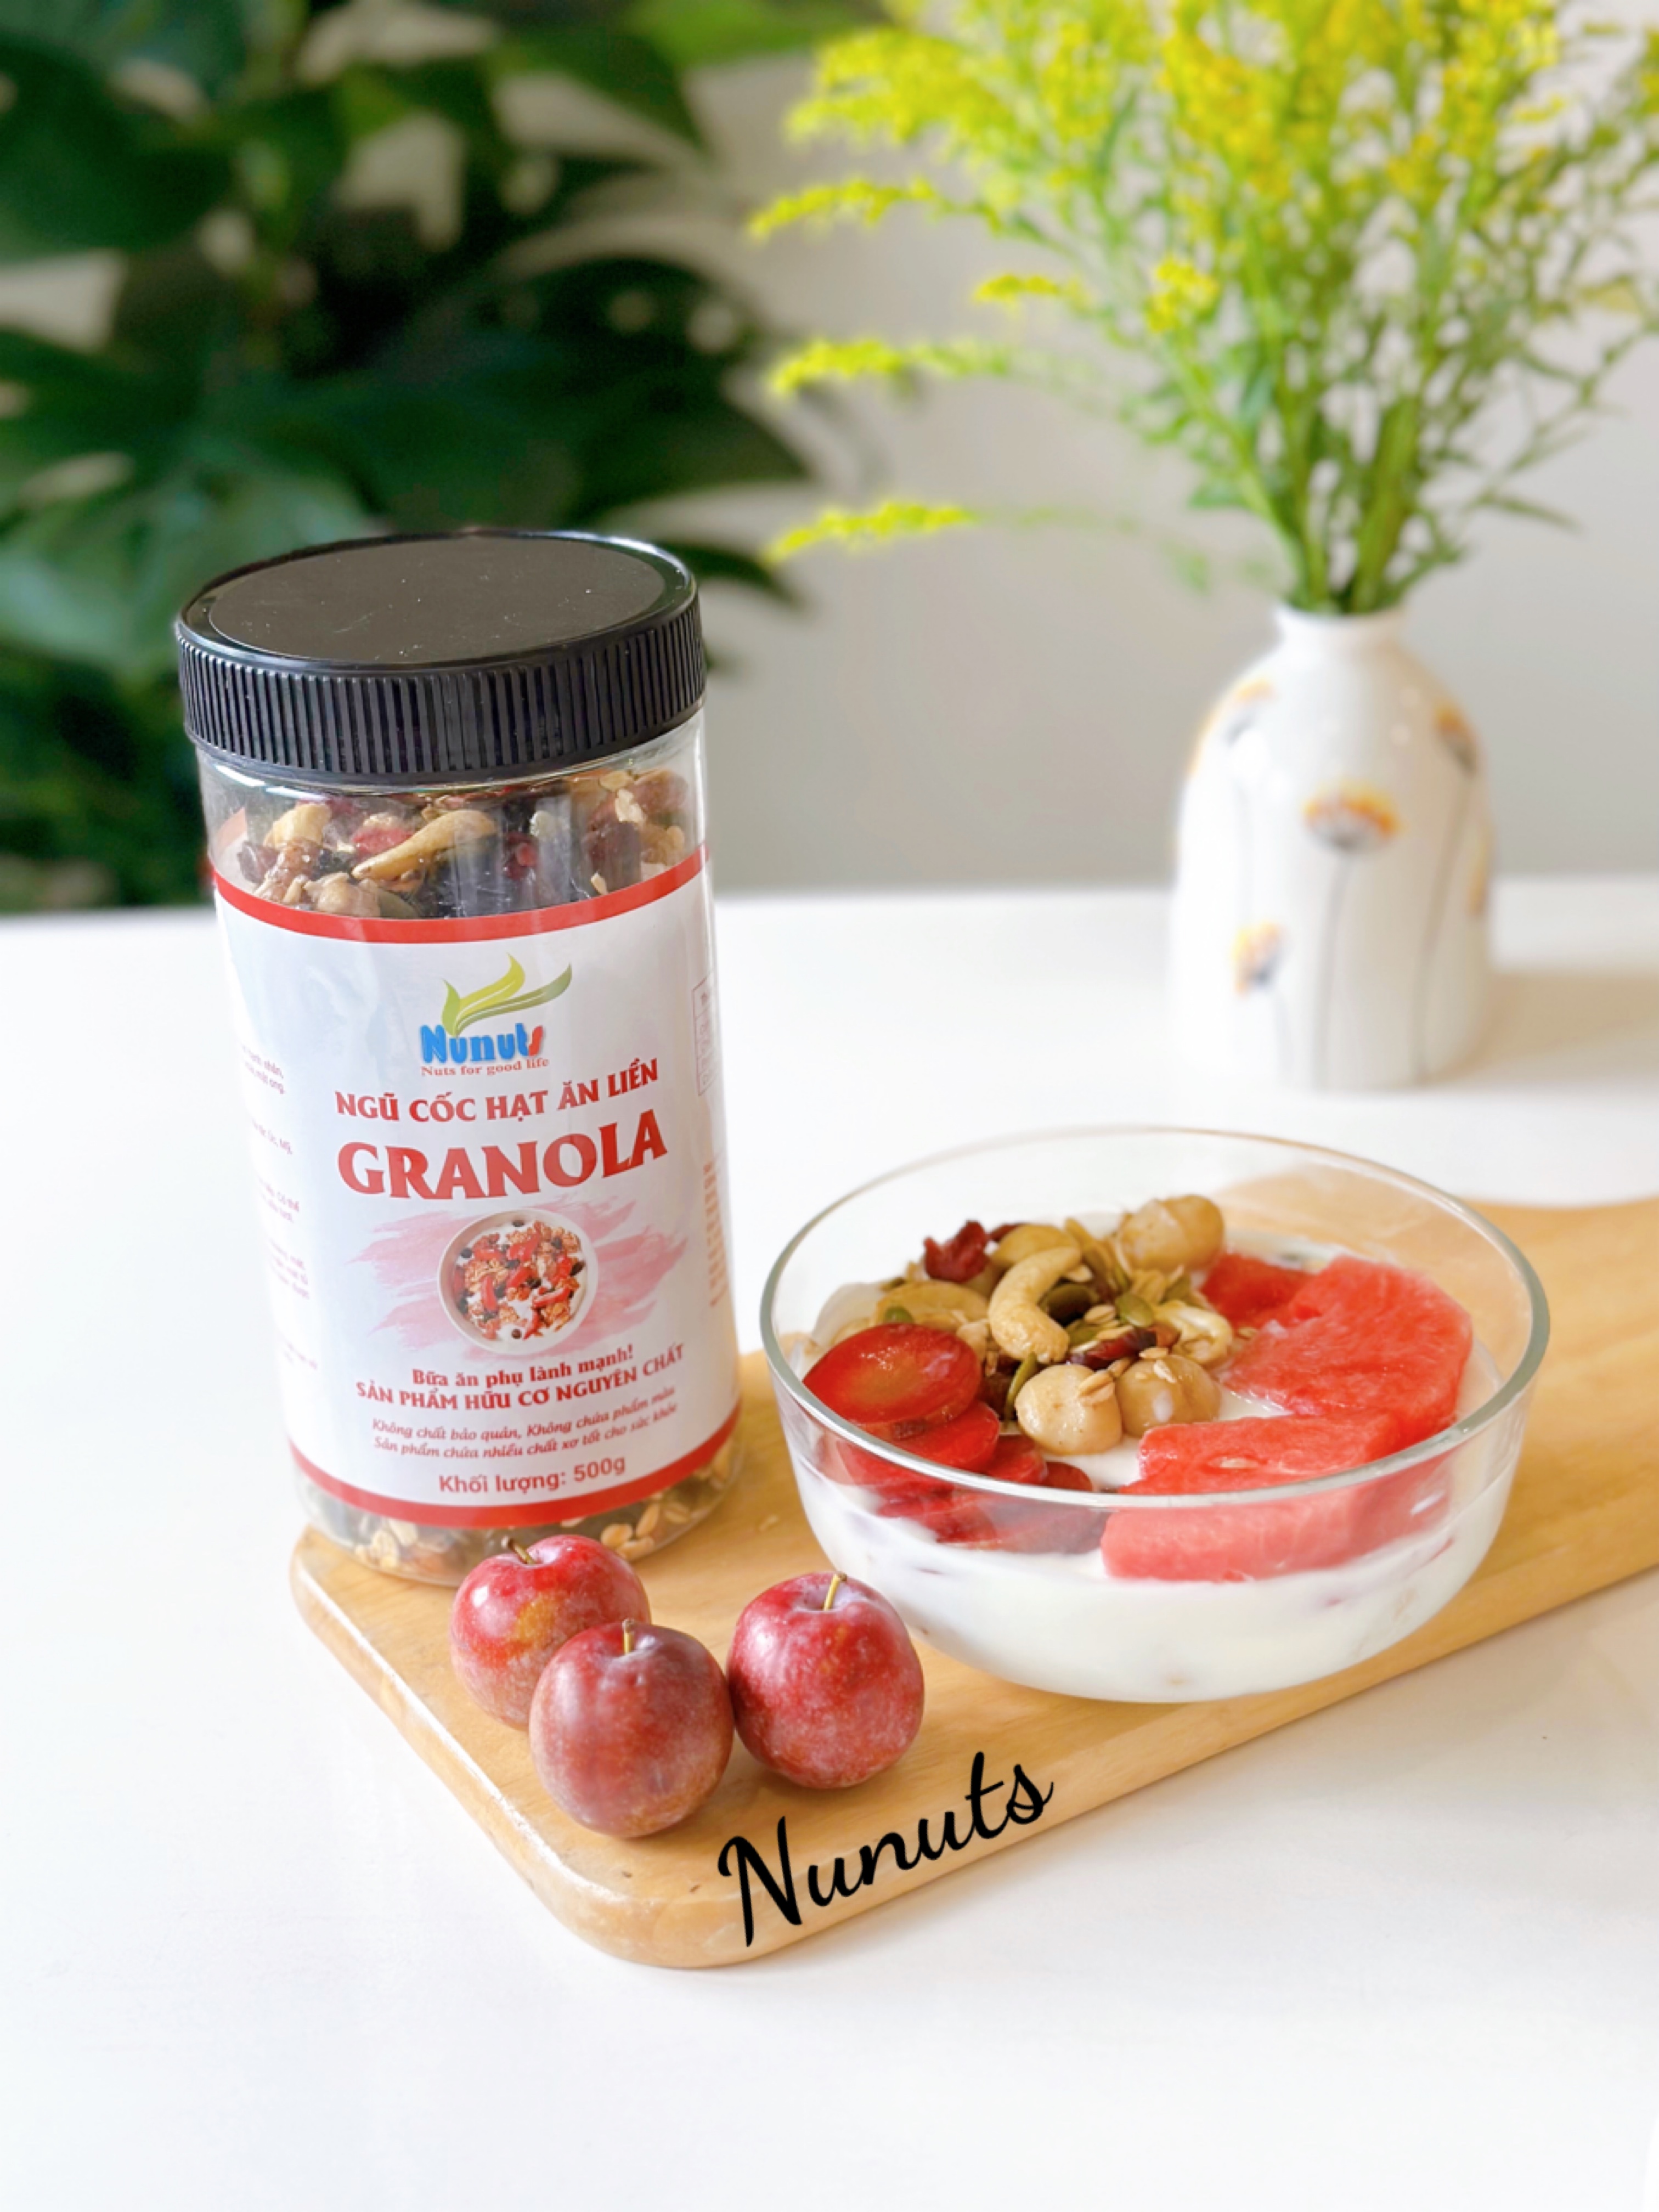 Granola siêu hạt macca úc Nunuts với 10% yến mạch là ngũ cốc ăn liền dành cho bà bầu, người muốn tăng giảm cân nặng